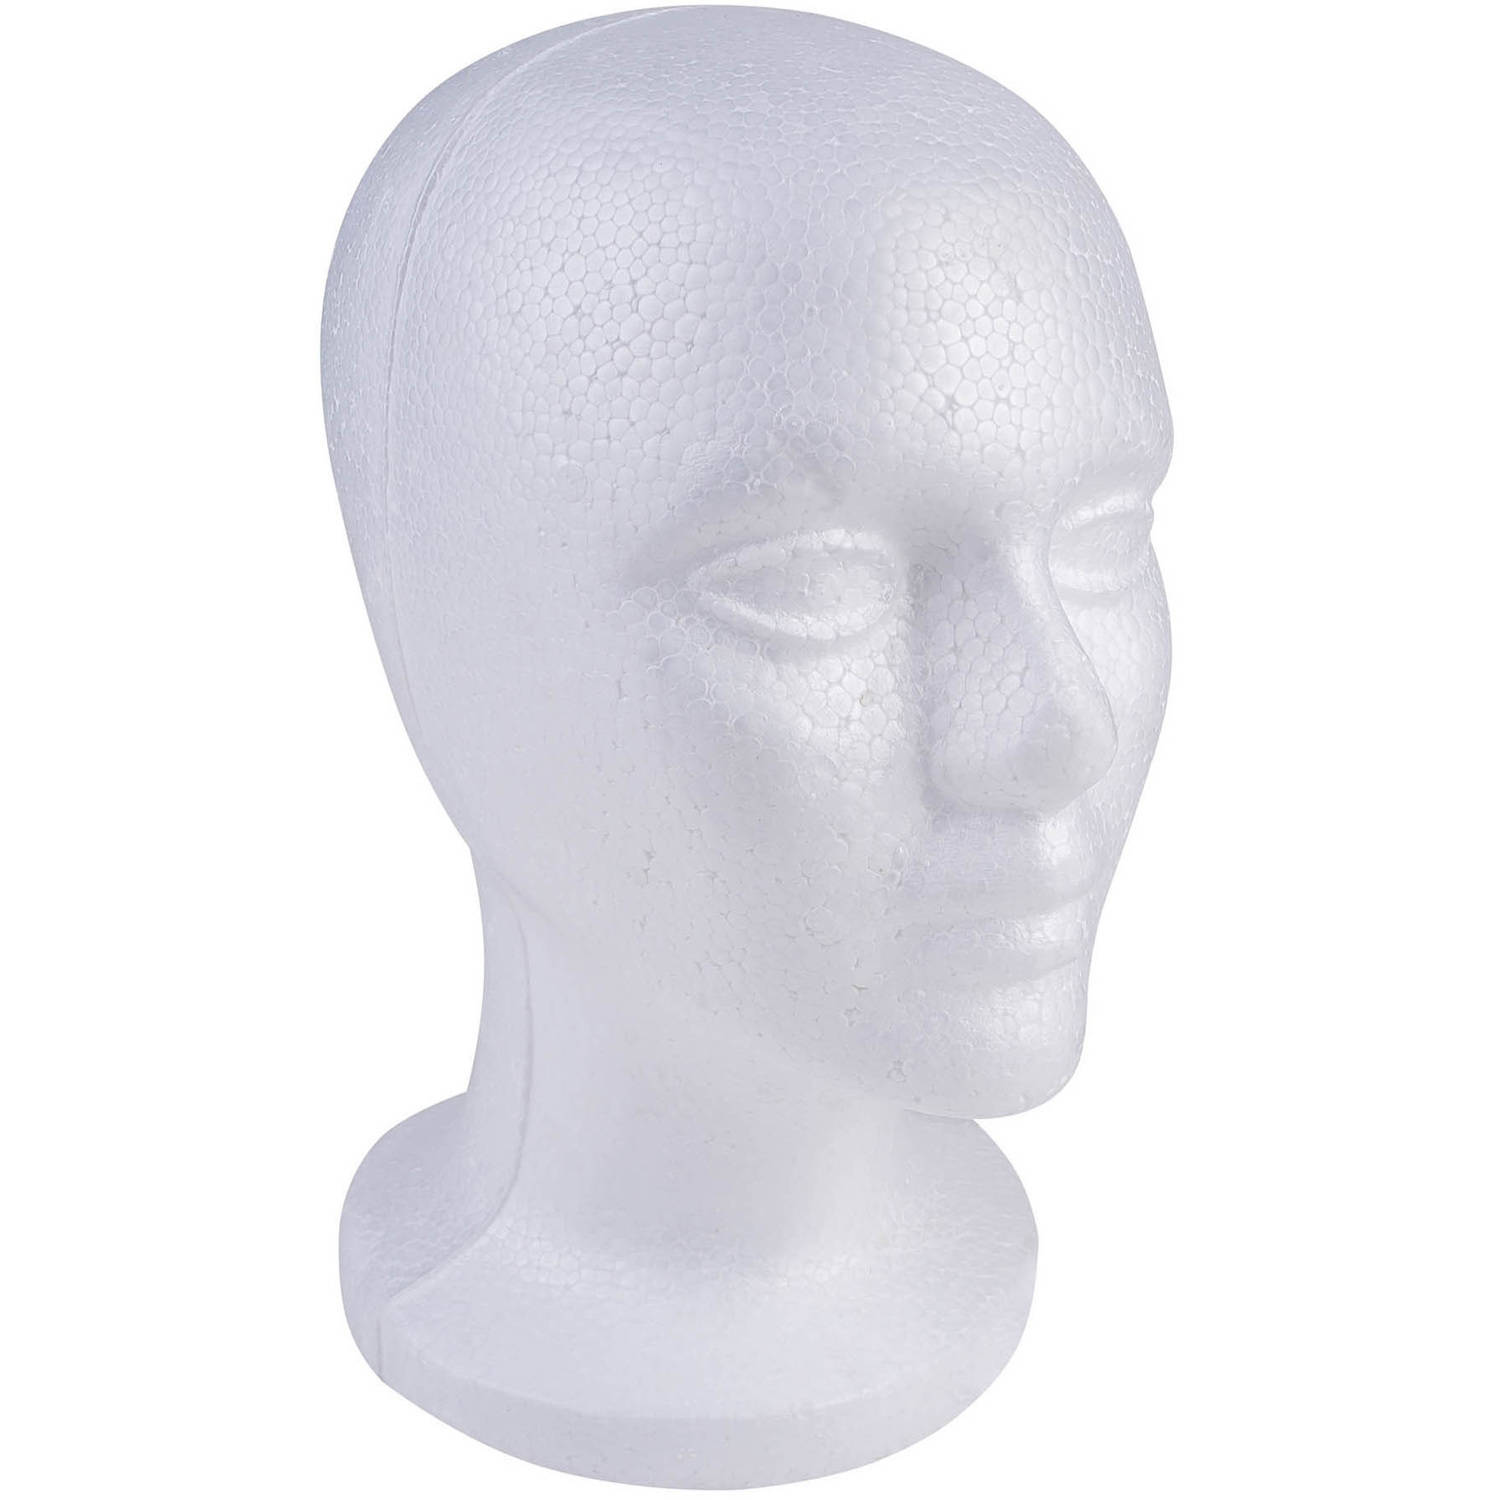 SHANY Styrofoam Model Mannequin Head